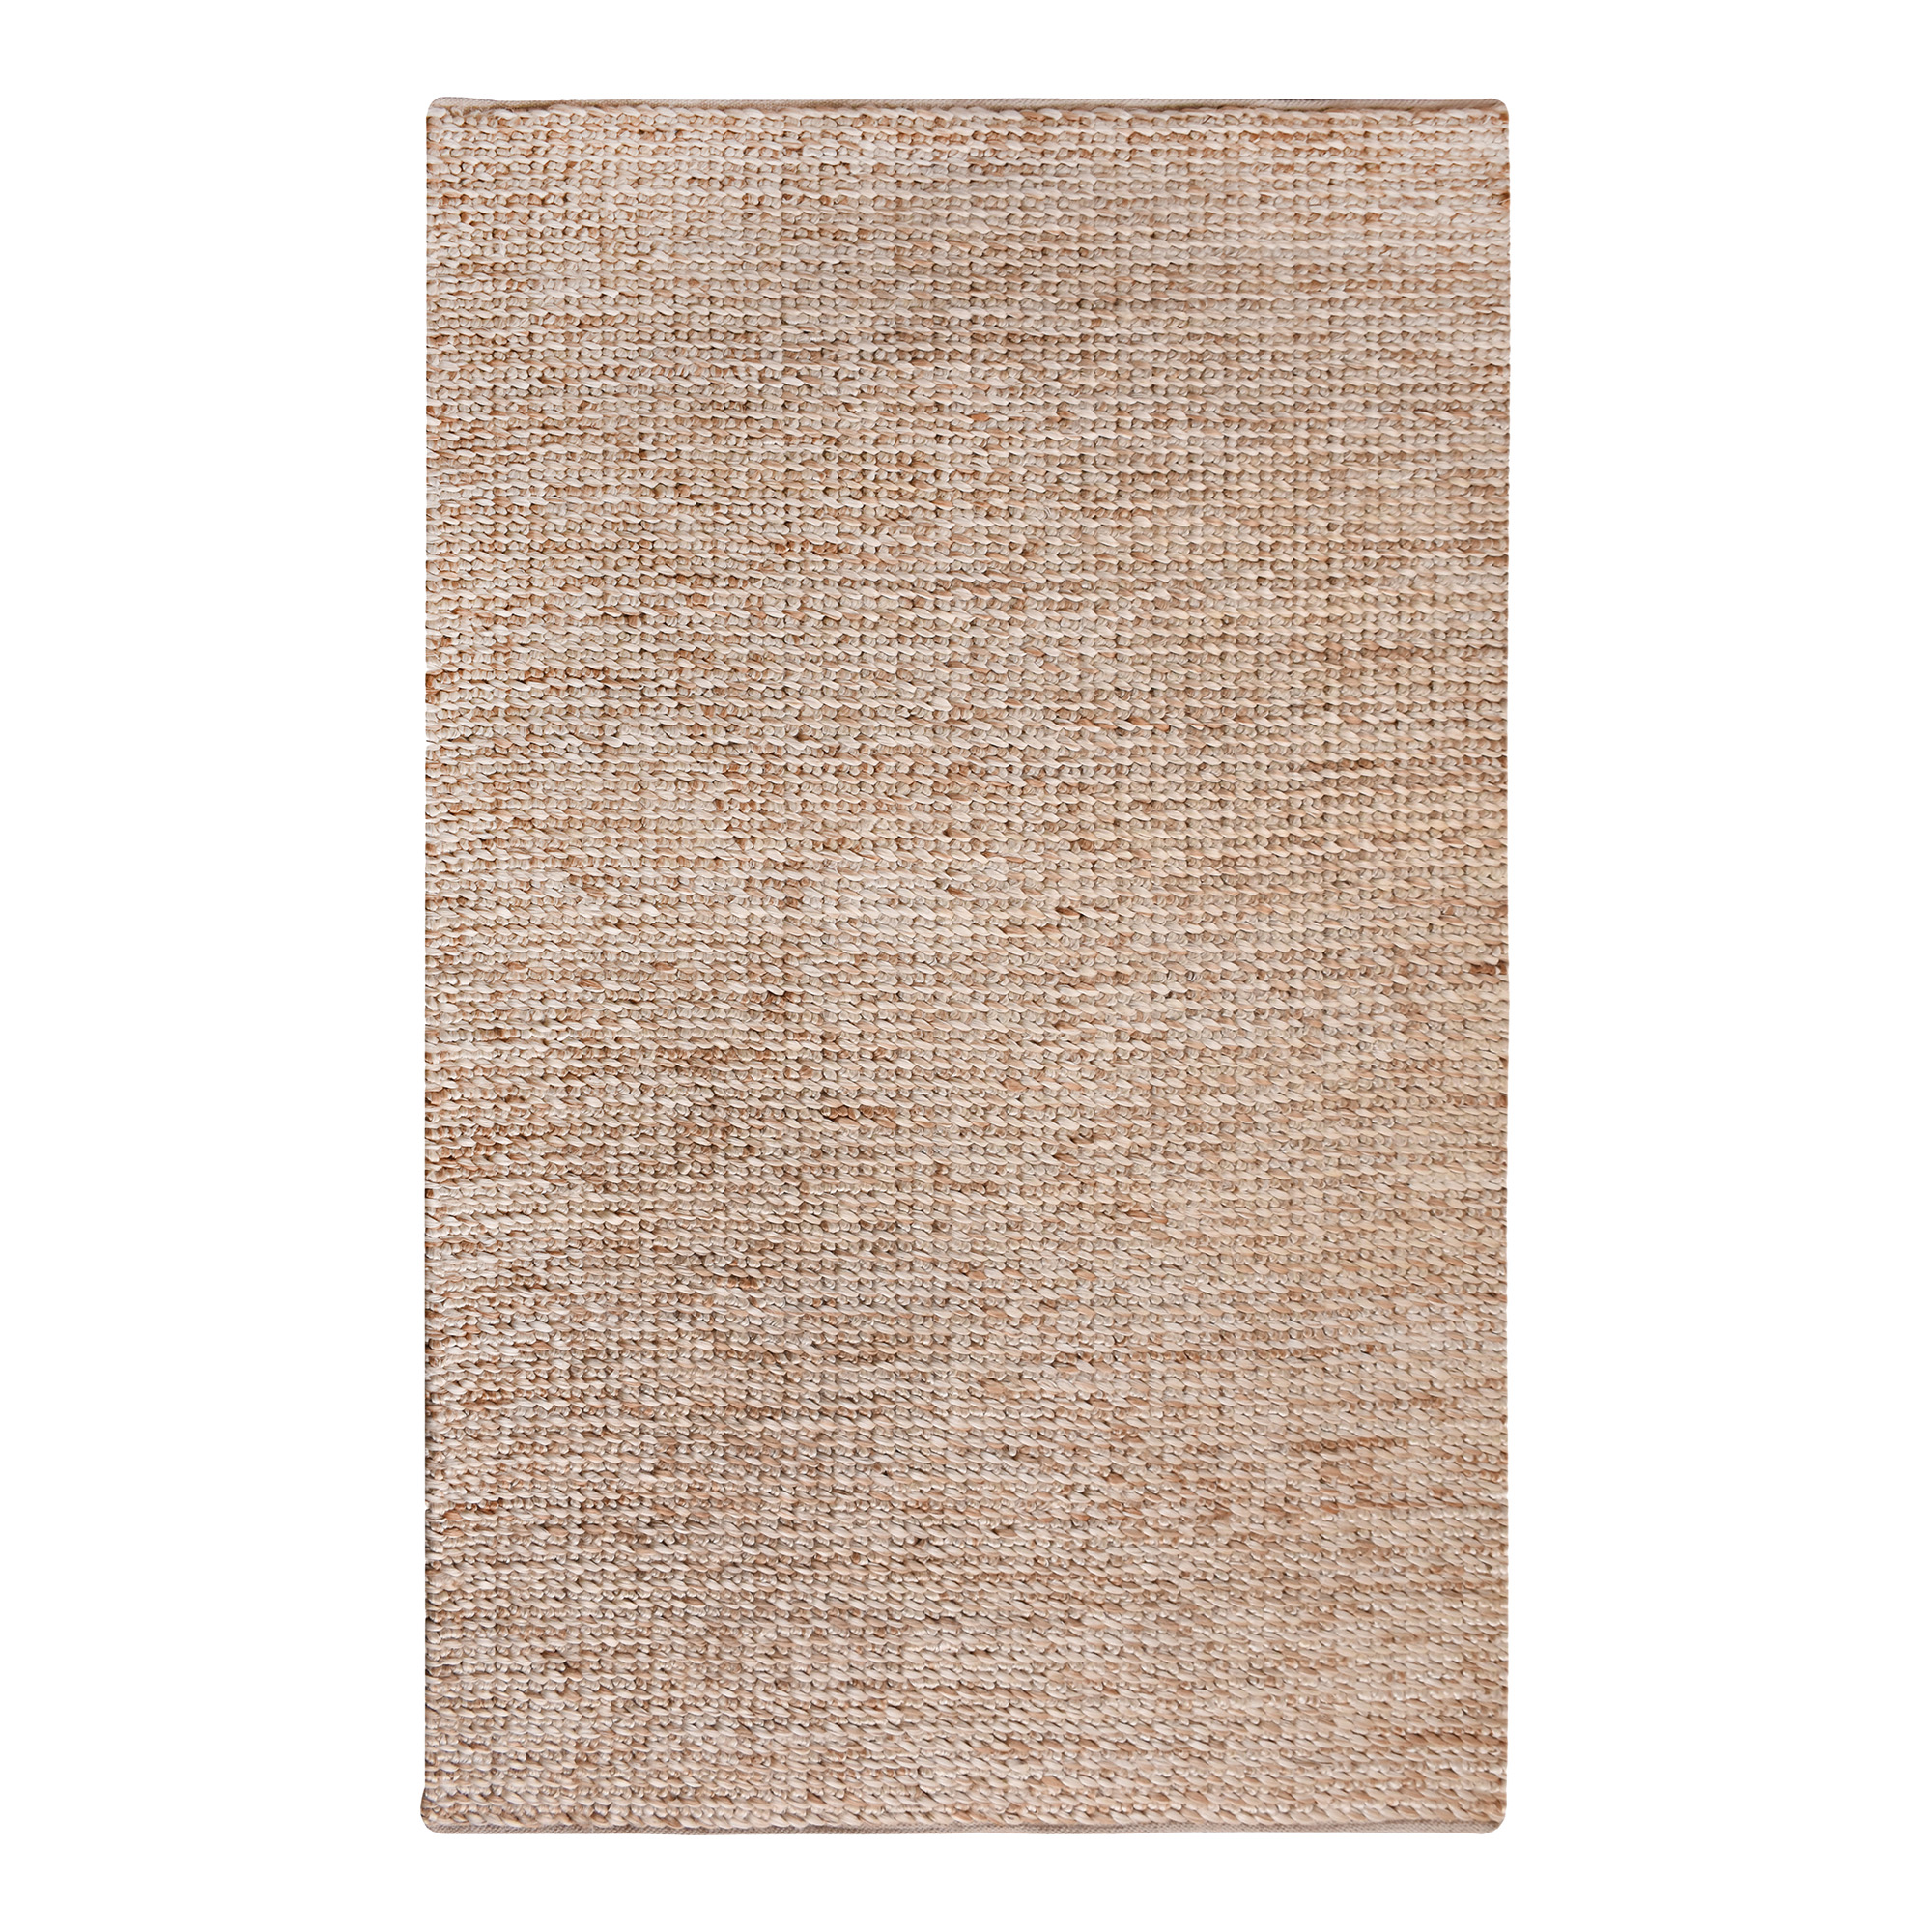 HOUSE NORDIC Salem gulvtæppe, rektangulær - natur jute/bomuld (200x300)